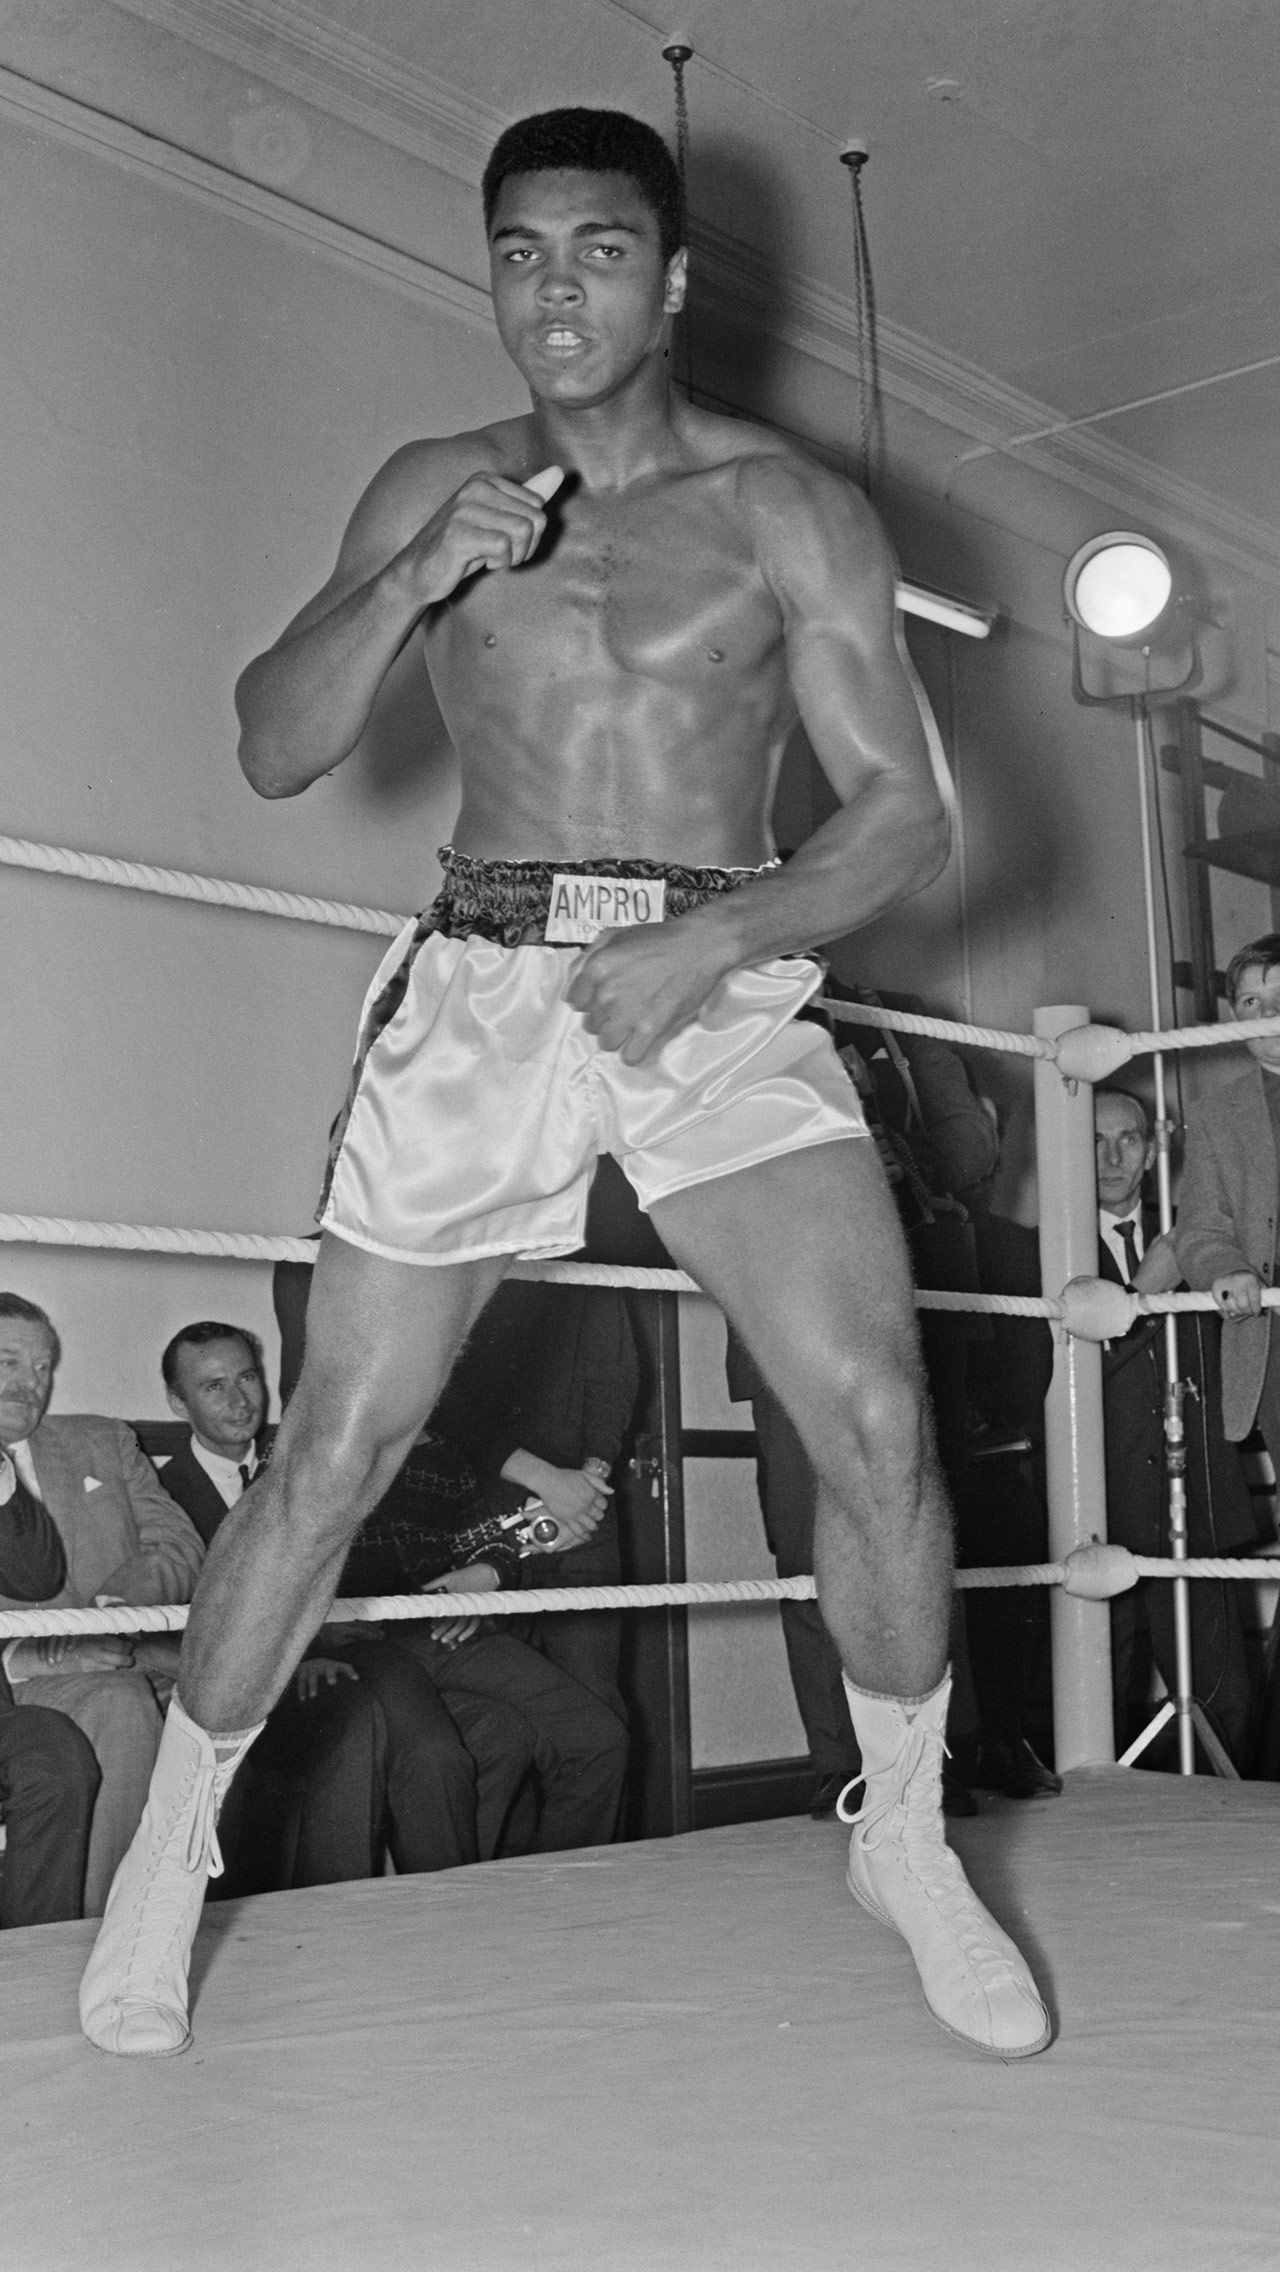 Самый большой гонорар Али — $ 7,9 млн за бой против Ларри Холмса в 1980 году. Это был его предпоследний поединок в профессиональной карьере.